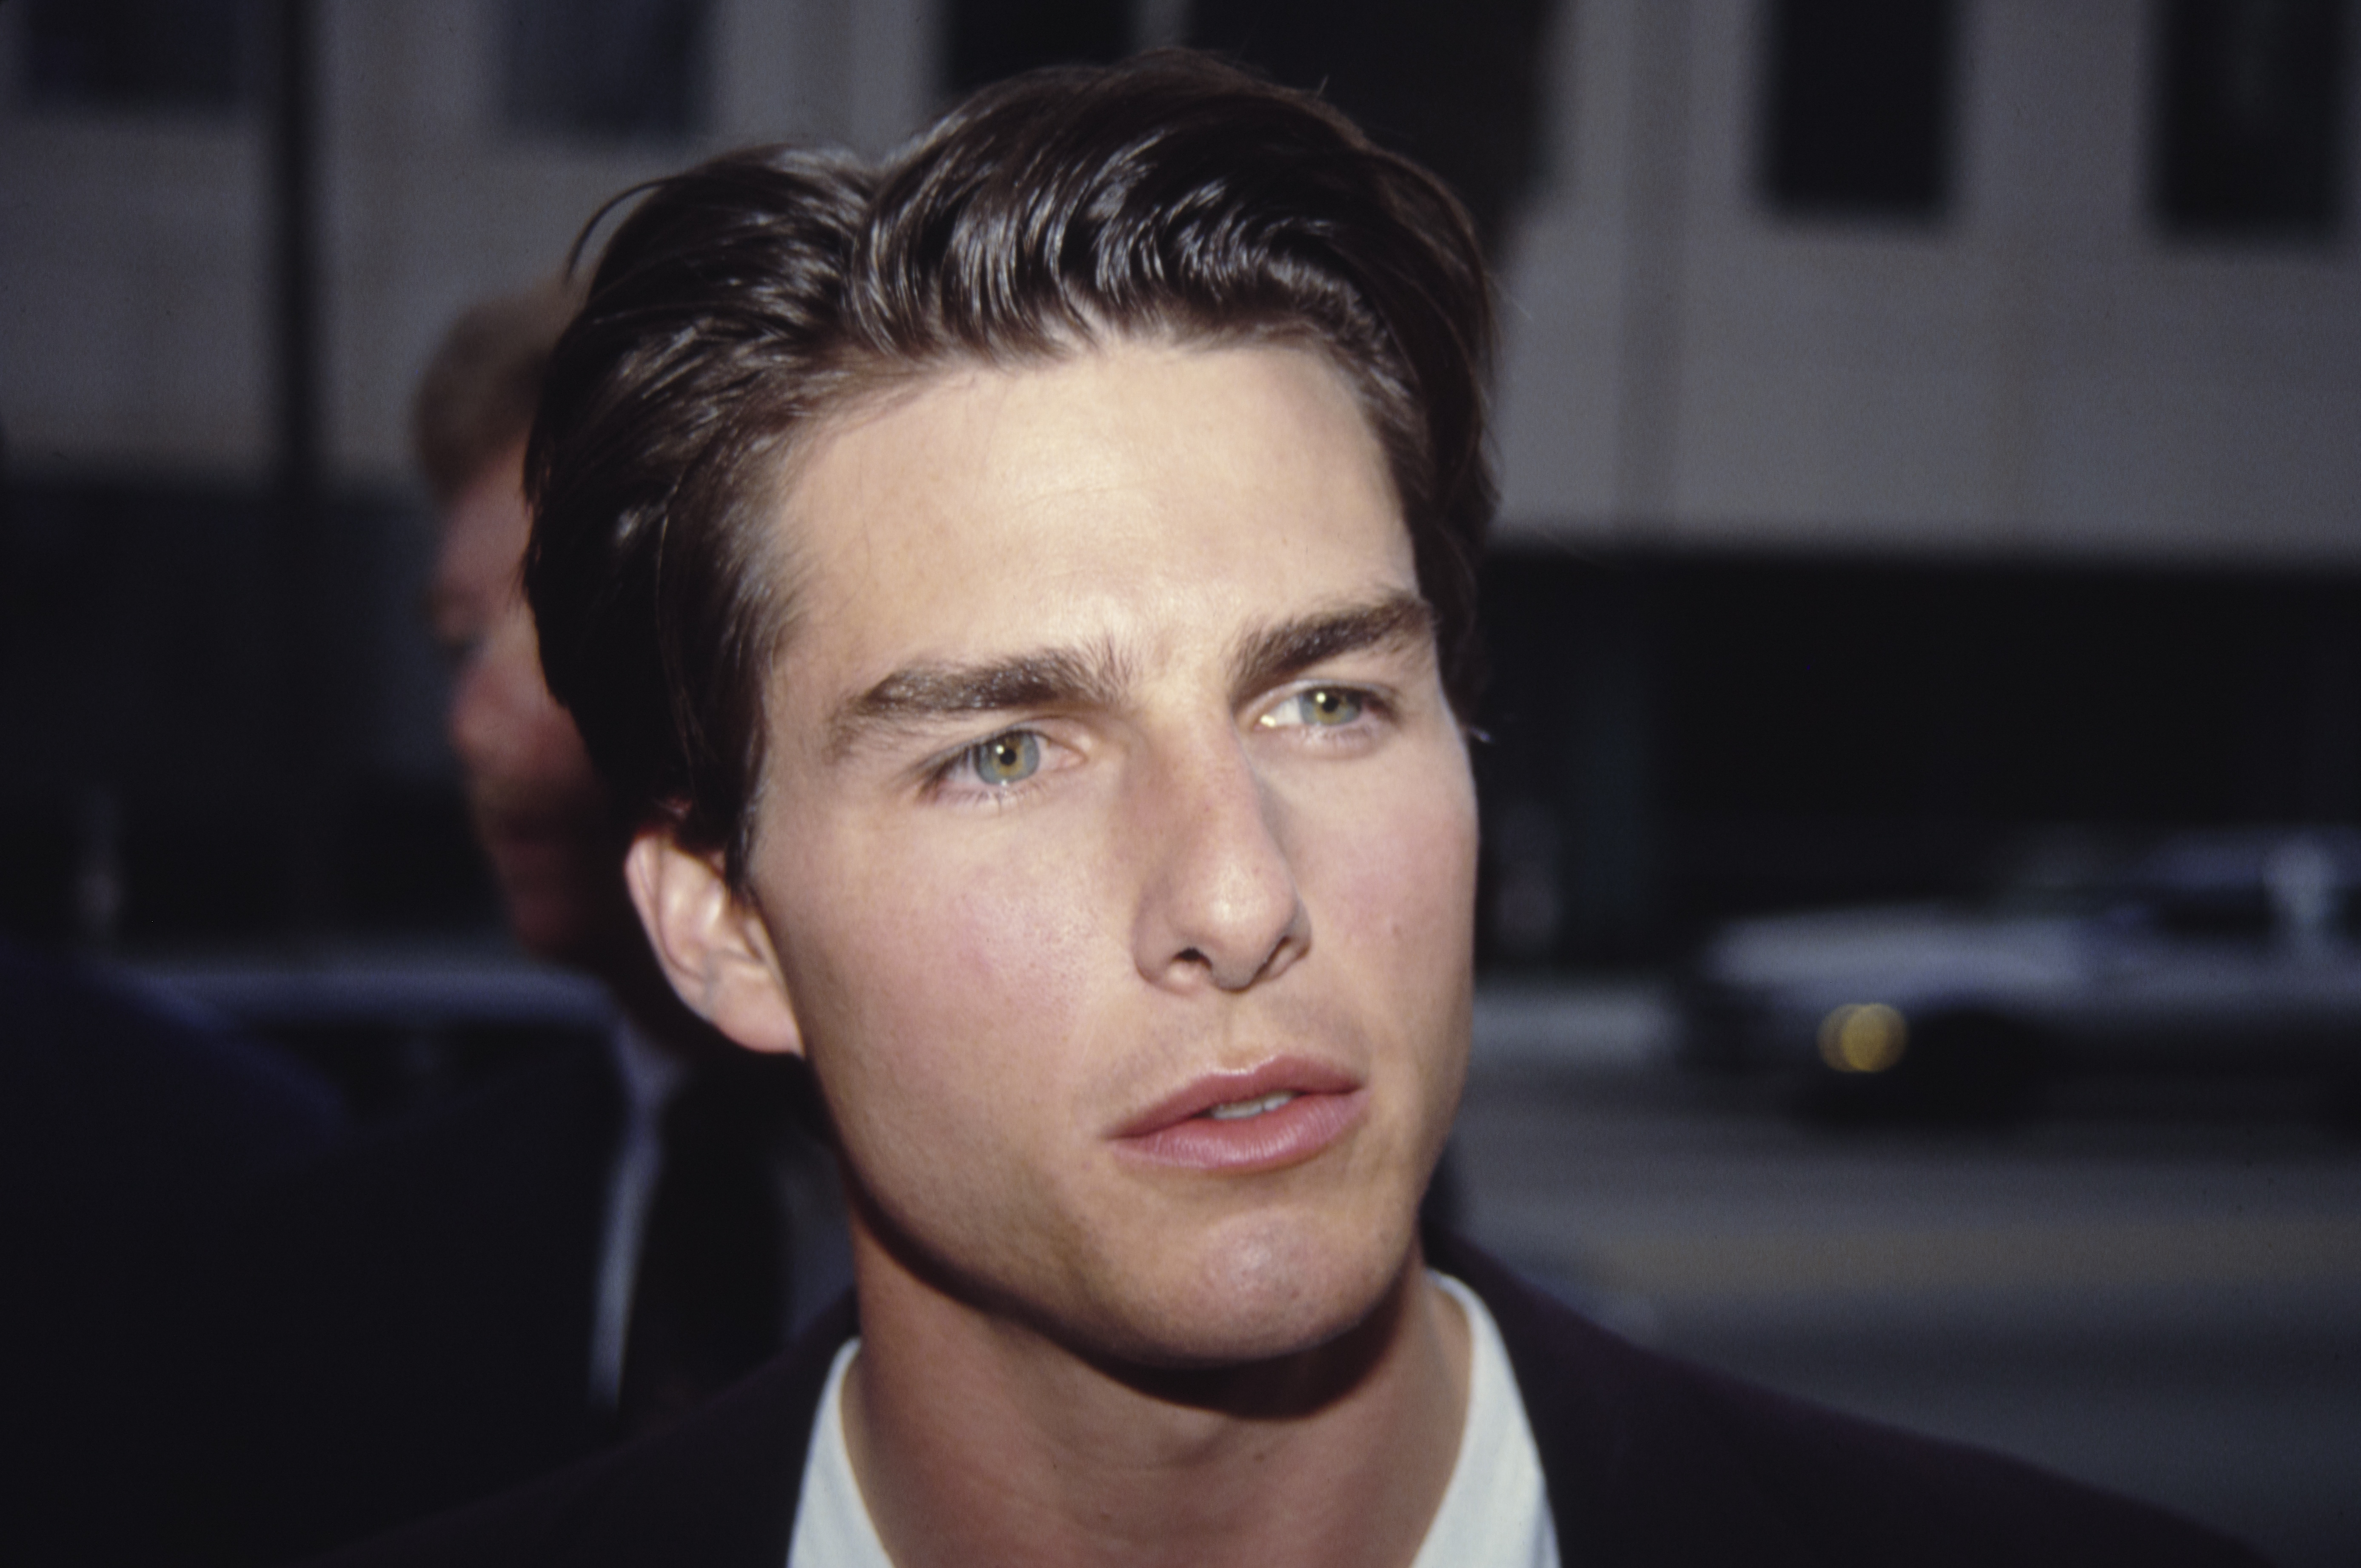 Tom Cruise assistant à un événement dans les années 1980 | Source : Getty Images